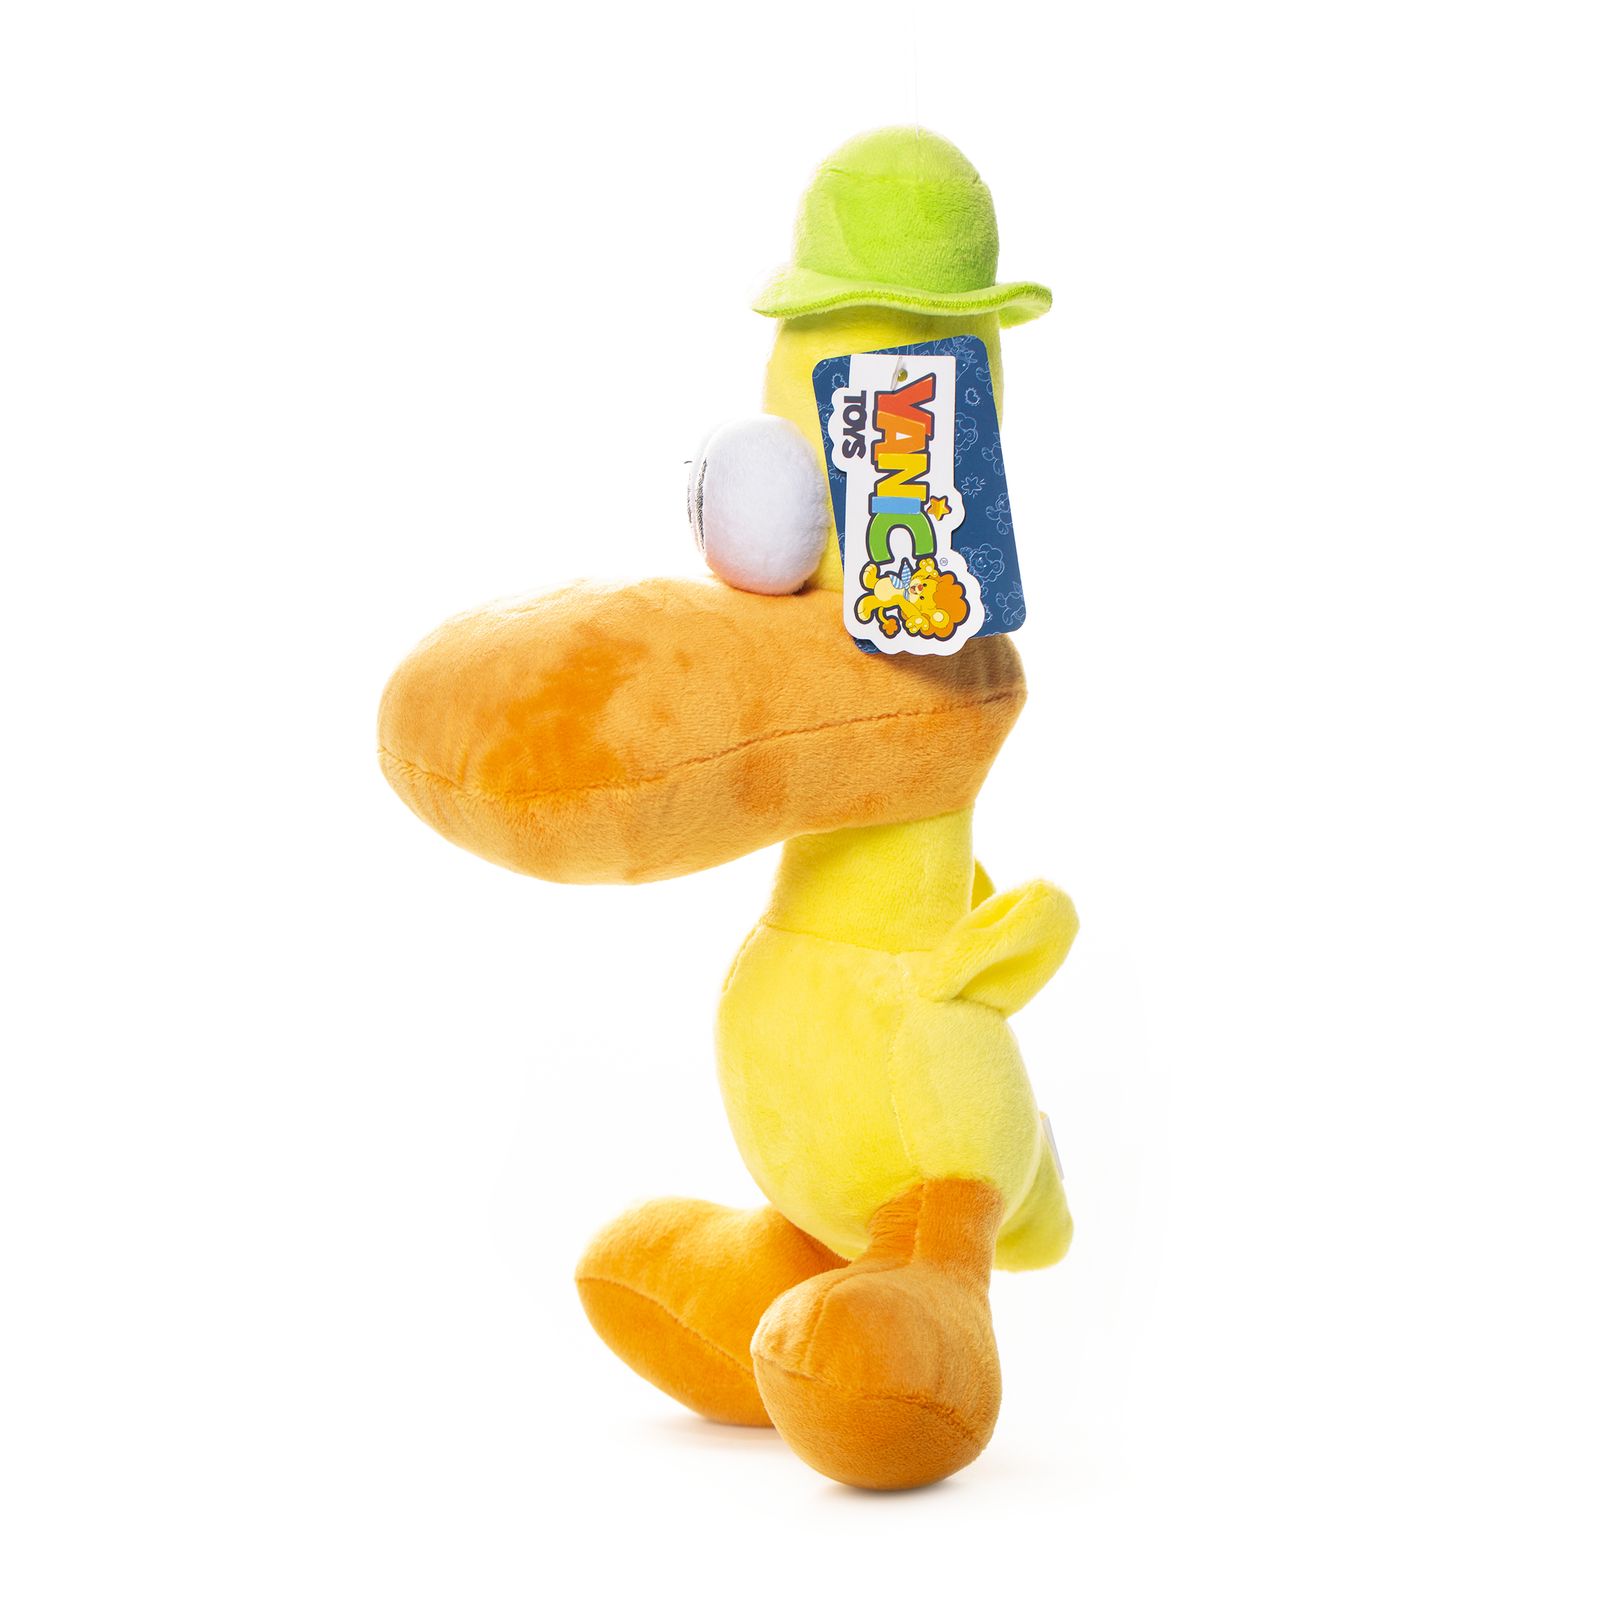 عروسک یانیک مدل شخصیت پاتو اردک پوکویو کد 100123 ارتفاع 31 سانتی متر -  - 2